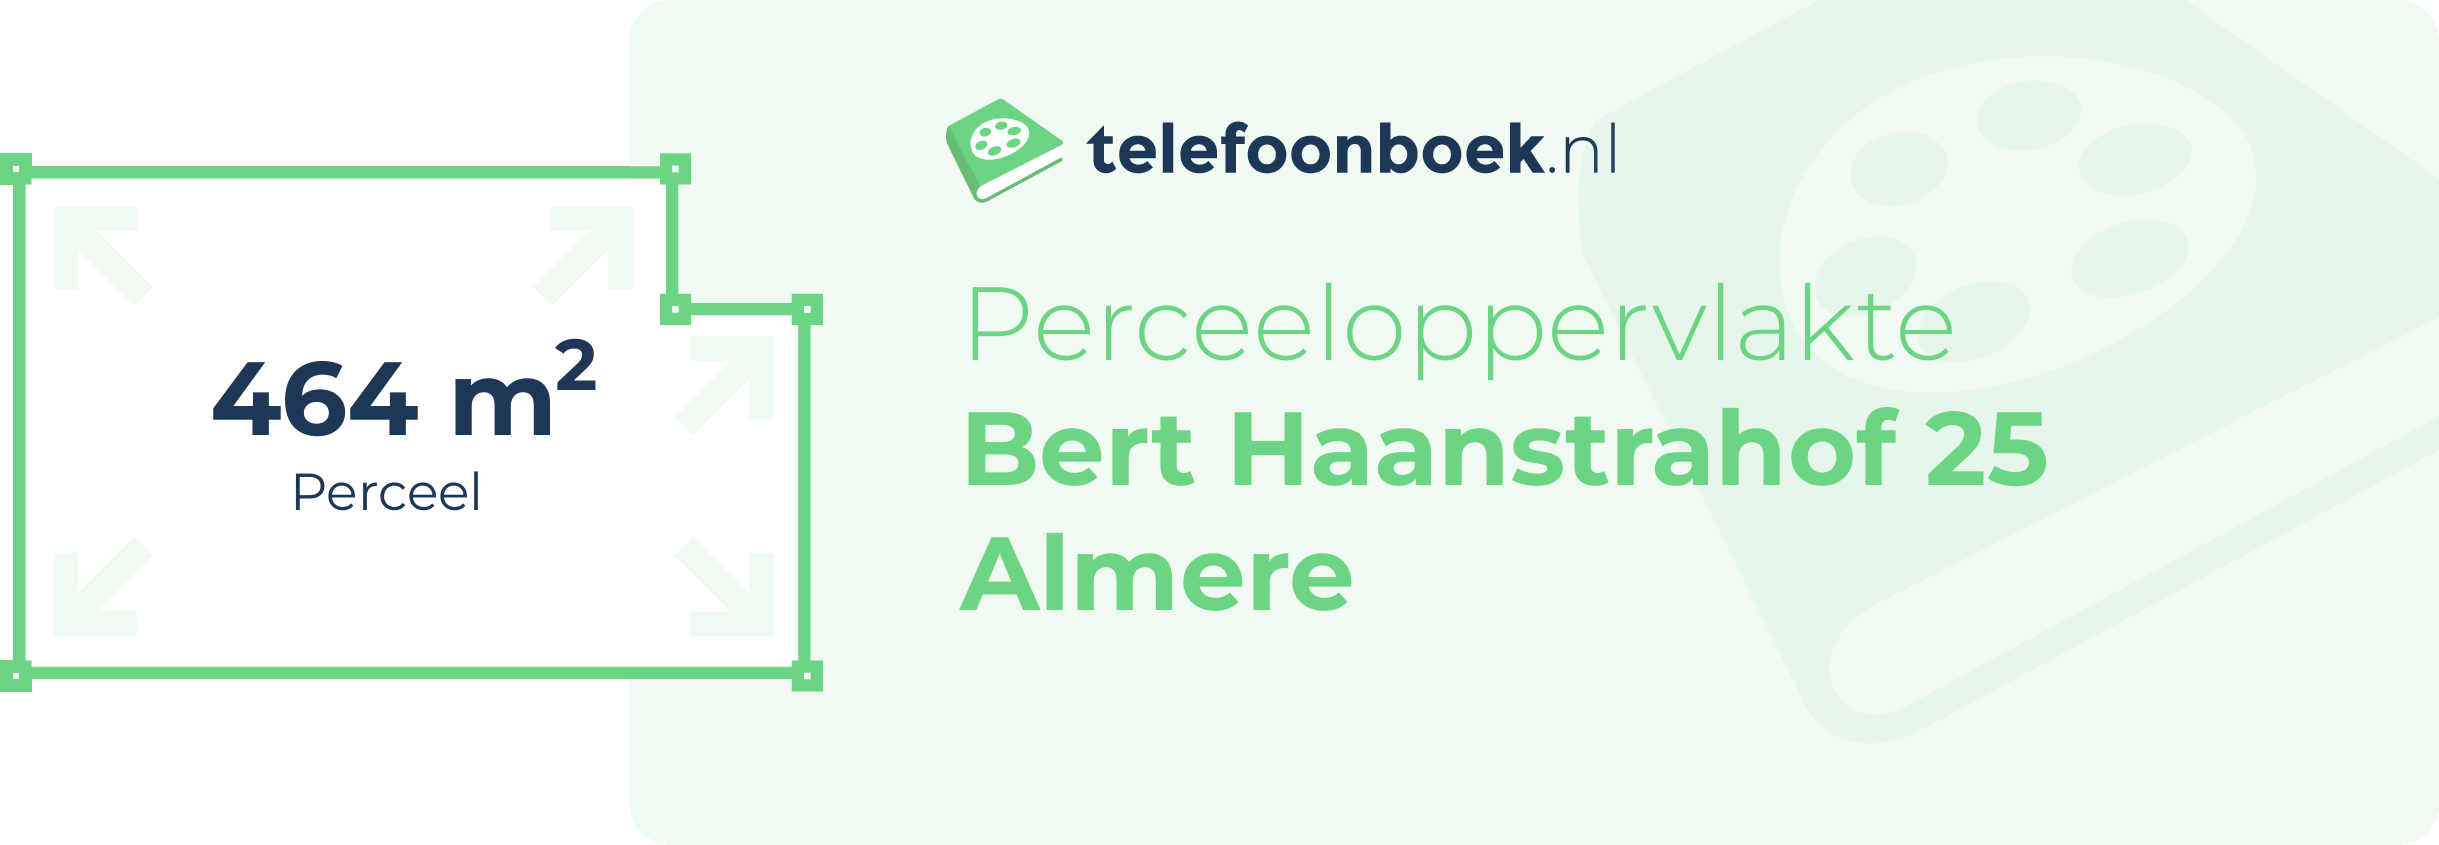 Perceeloppervlakte Bert Haanstrahof 25 Almere